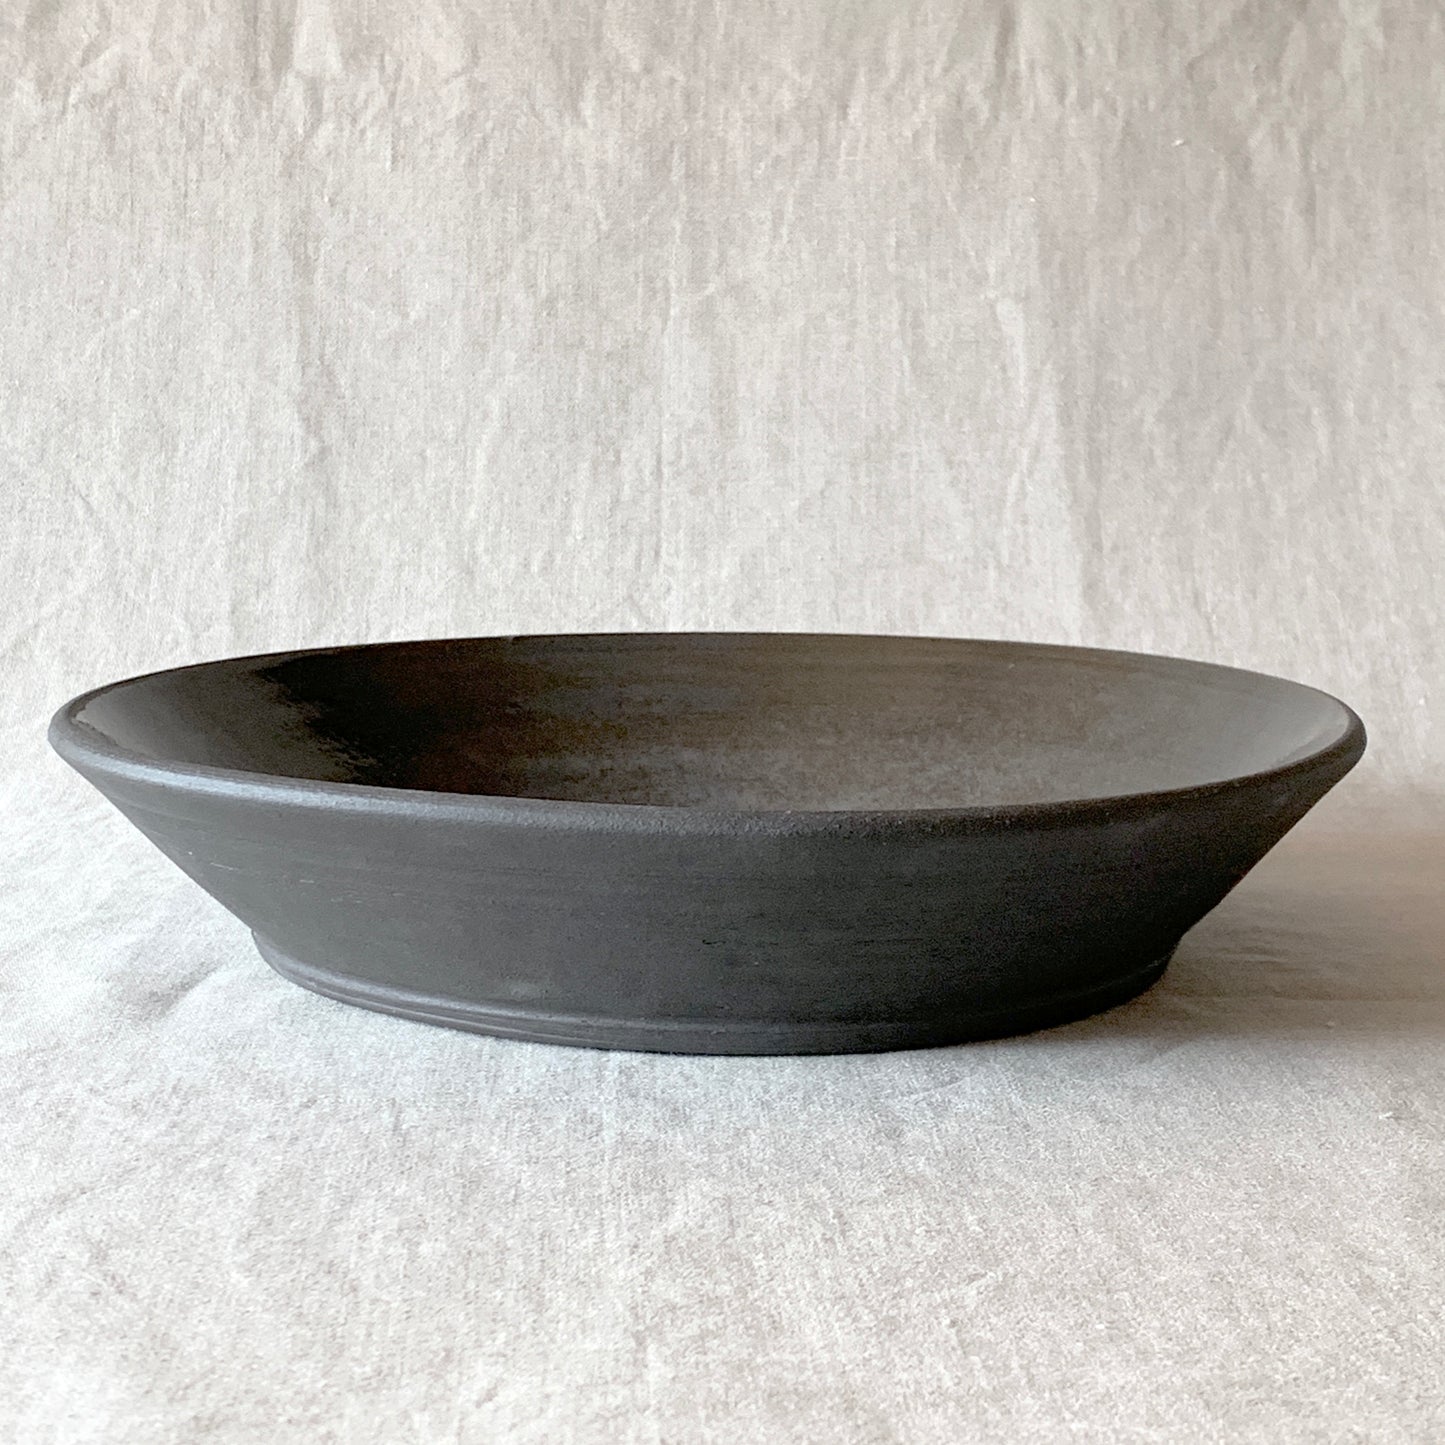 Fat med höga kanter i svart lera (29 cm)